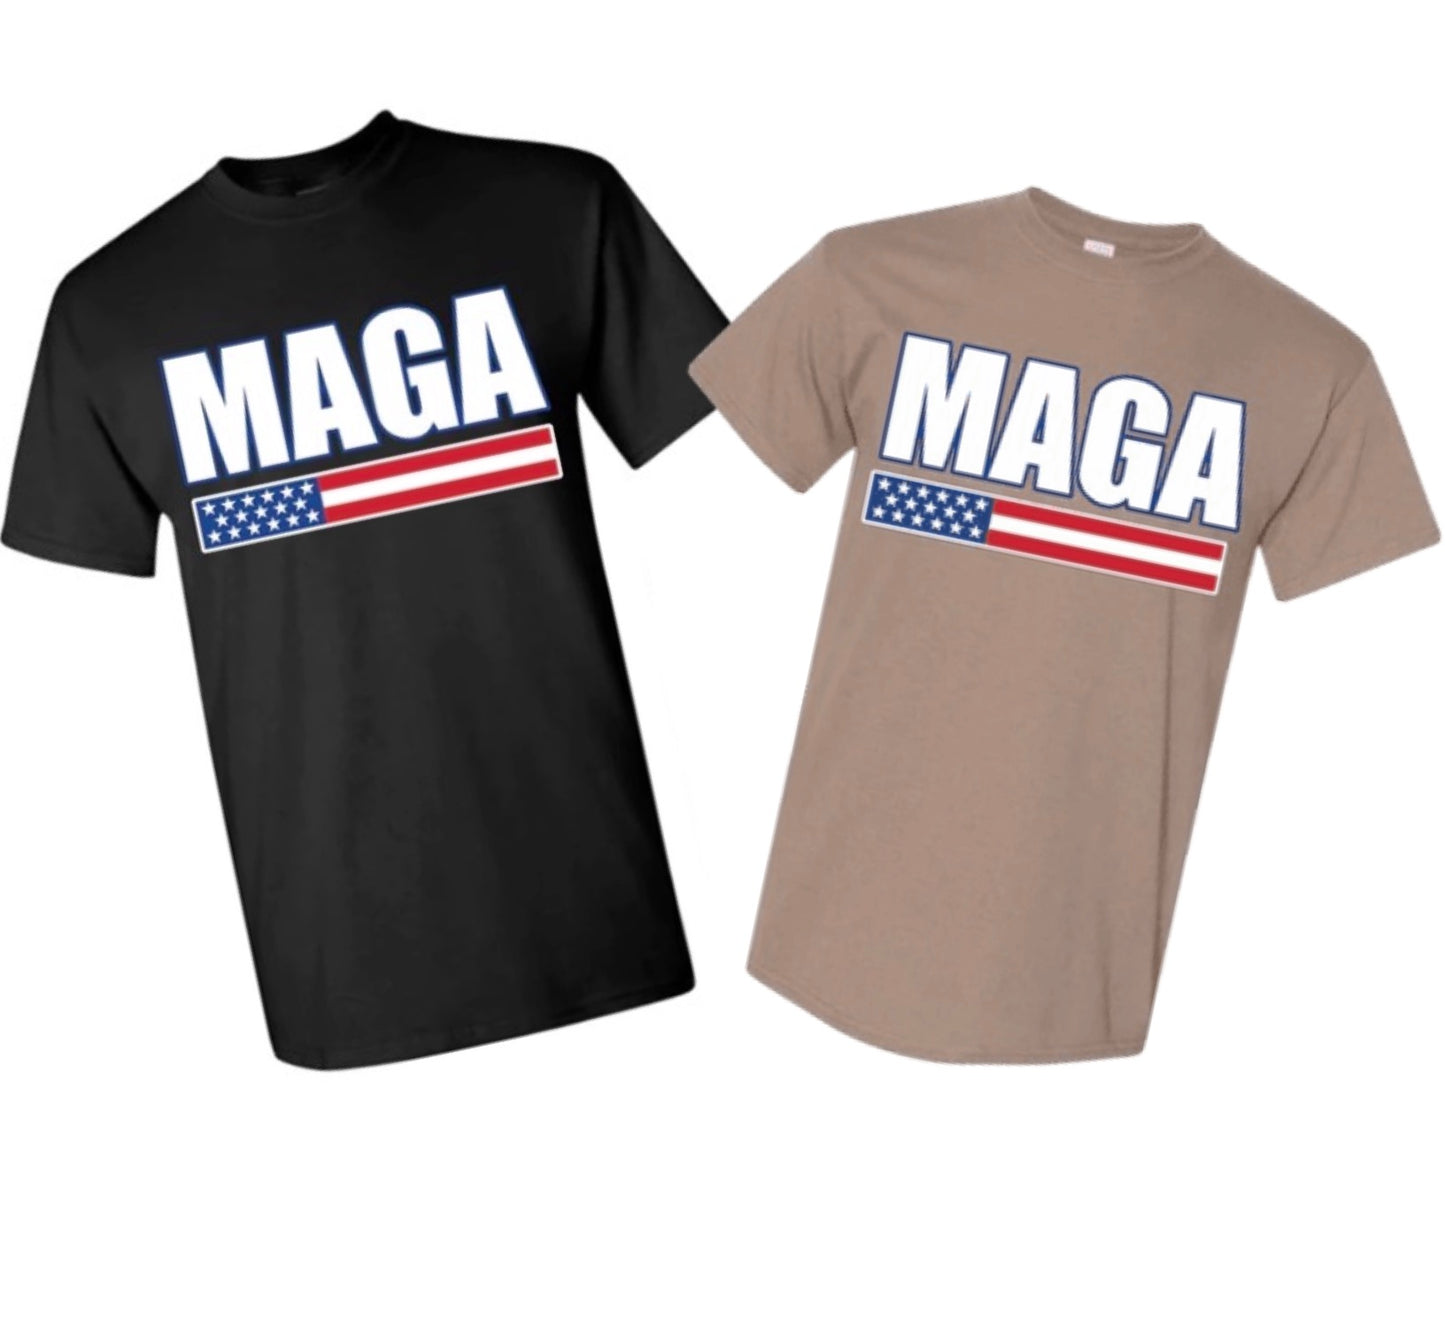 Thanksgiving Edition MAGA T-Shirt — Just Pay Shipping